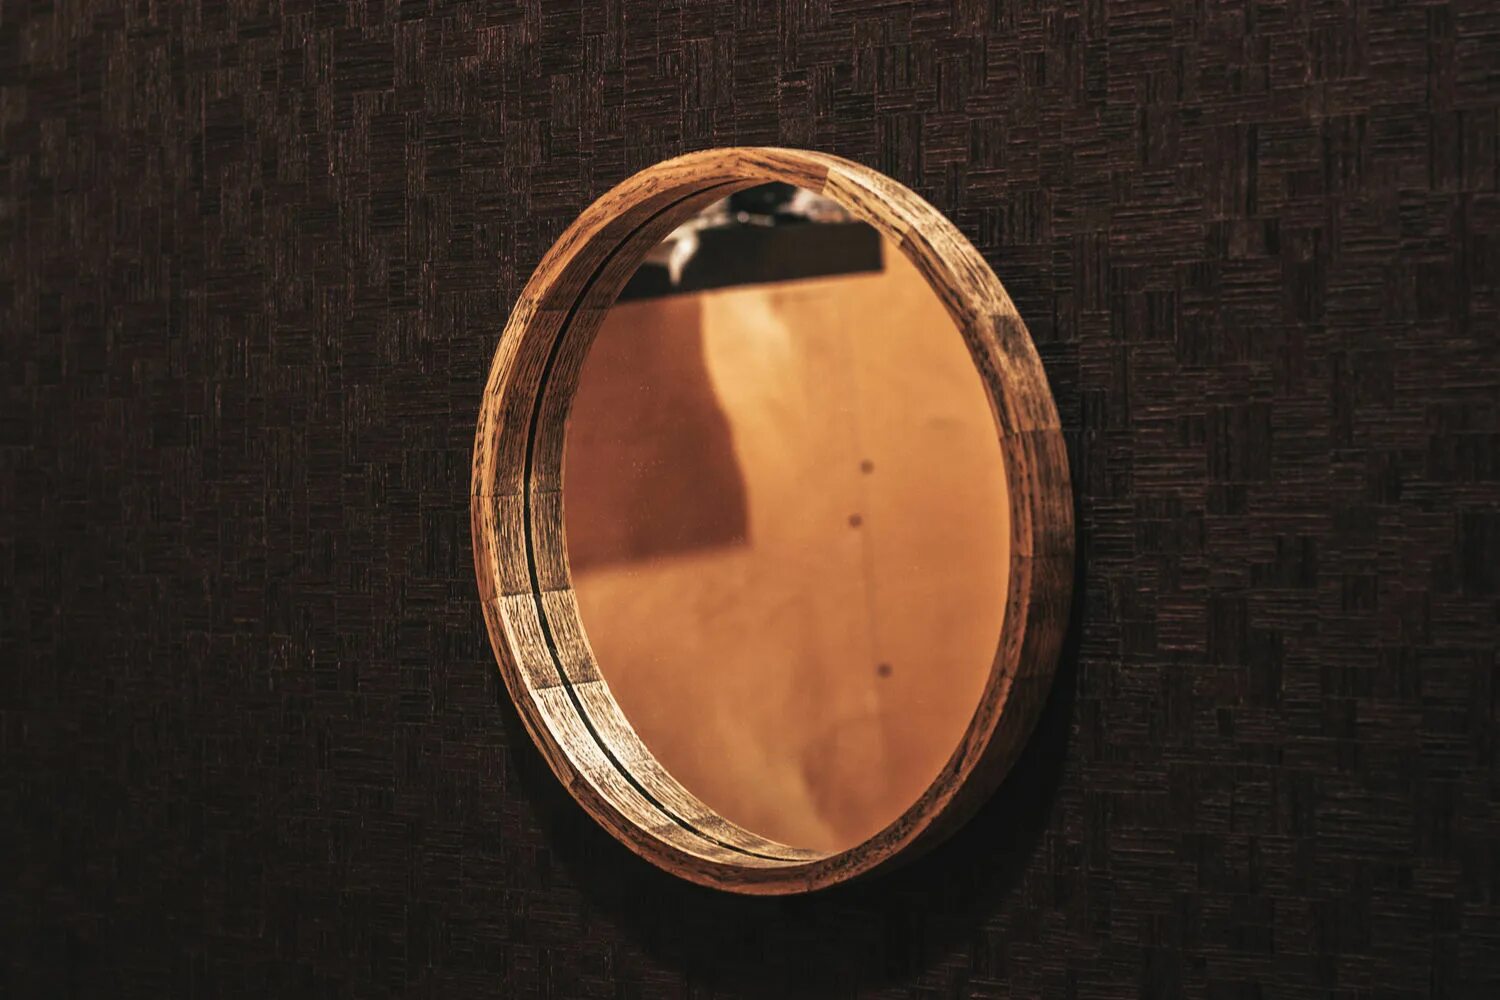 Круглое зеркало икеа в деревянной раме. Зеркало икеа круглое. Зеркало в деревянной раме икеа. Зеркало в деревянной раме 173х93см, дерево 18-2703. Зеркала дуб купить